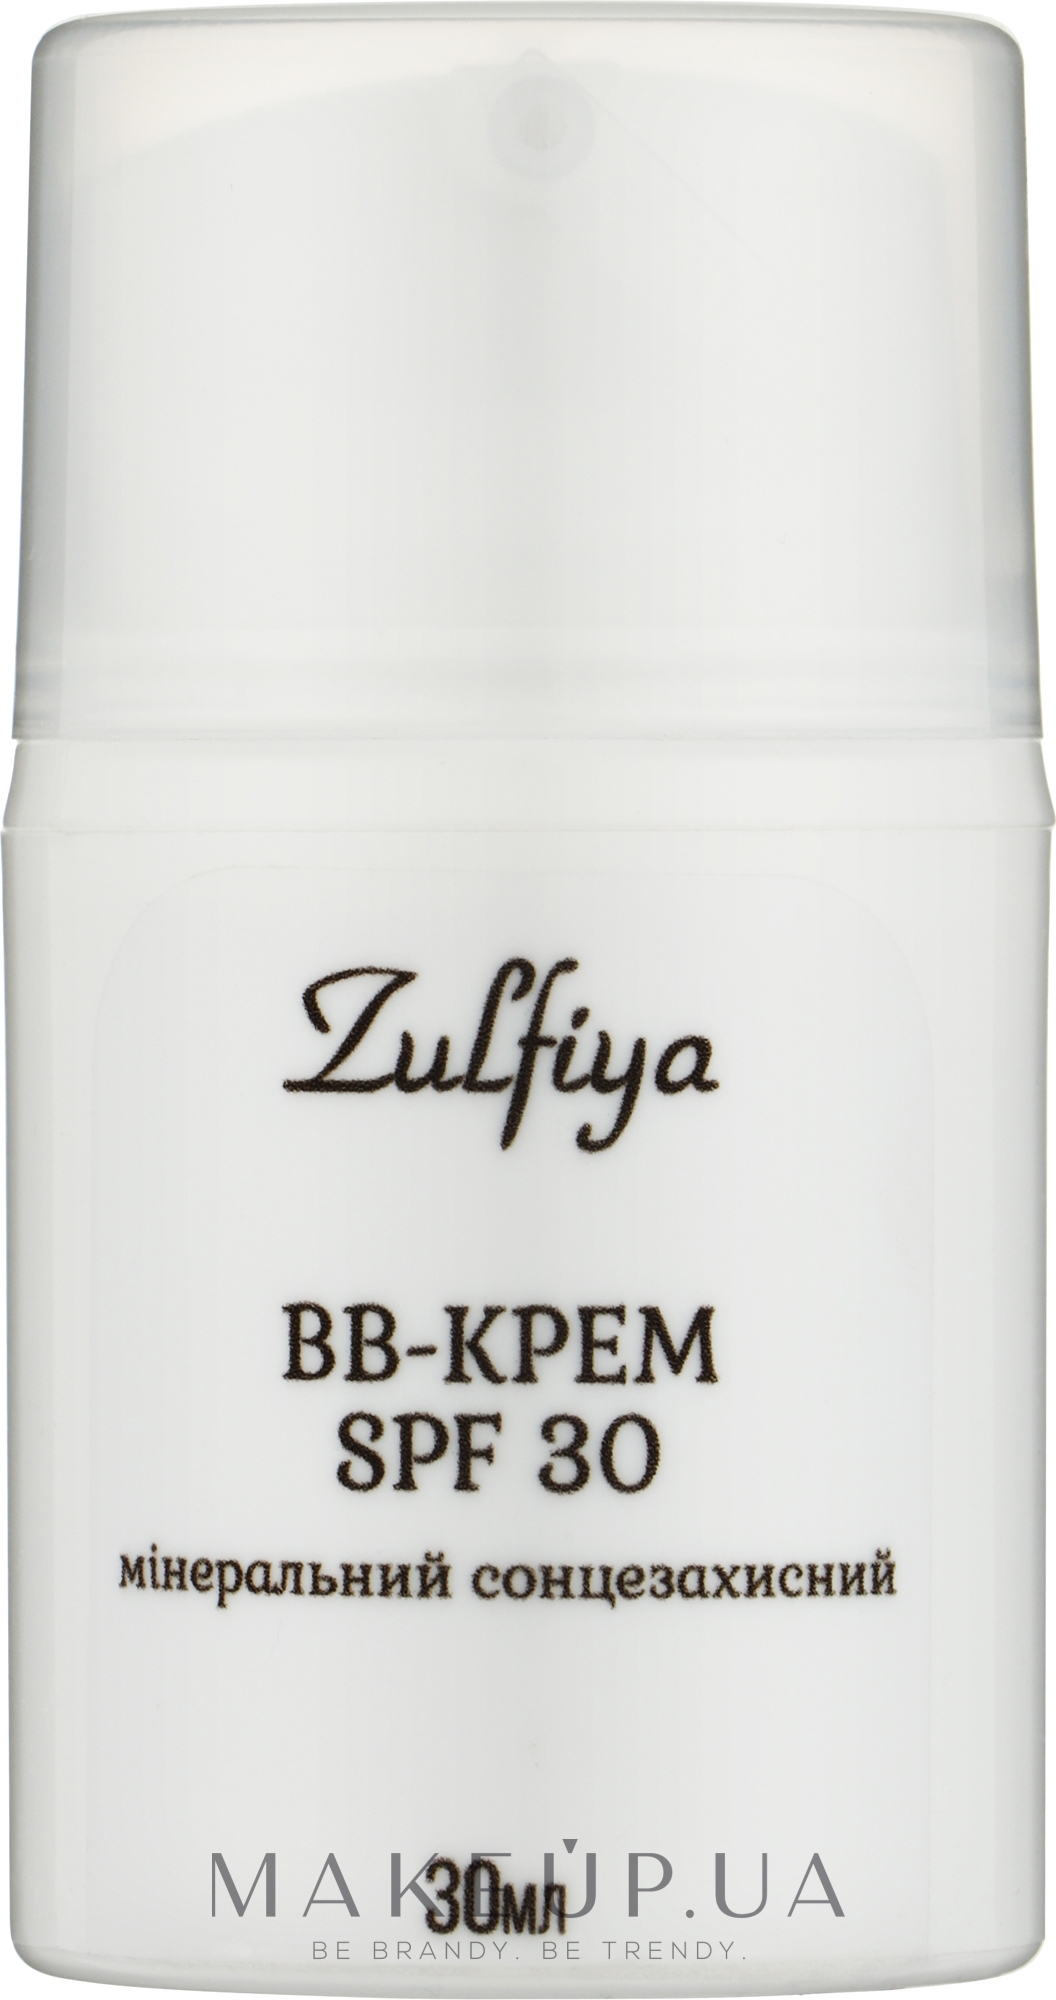 Мінеральний сонцезахисний BB-крем для обличчя (SPF 30) - Zulfiya — фото 30g